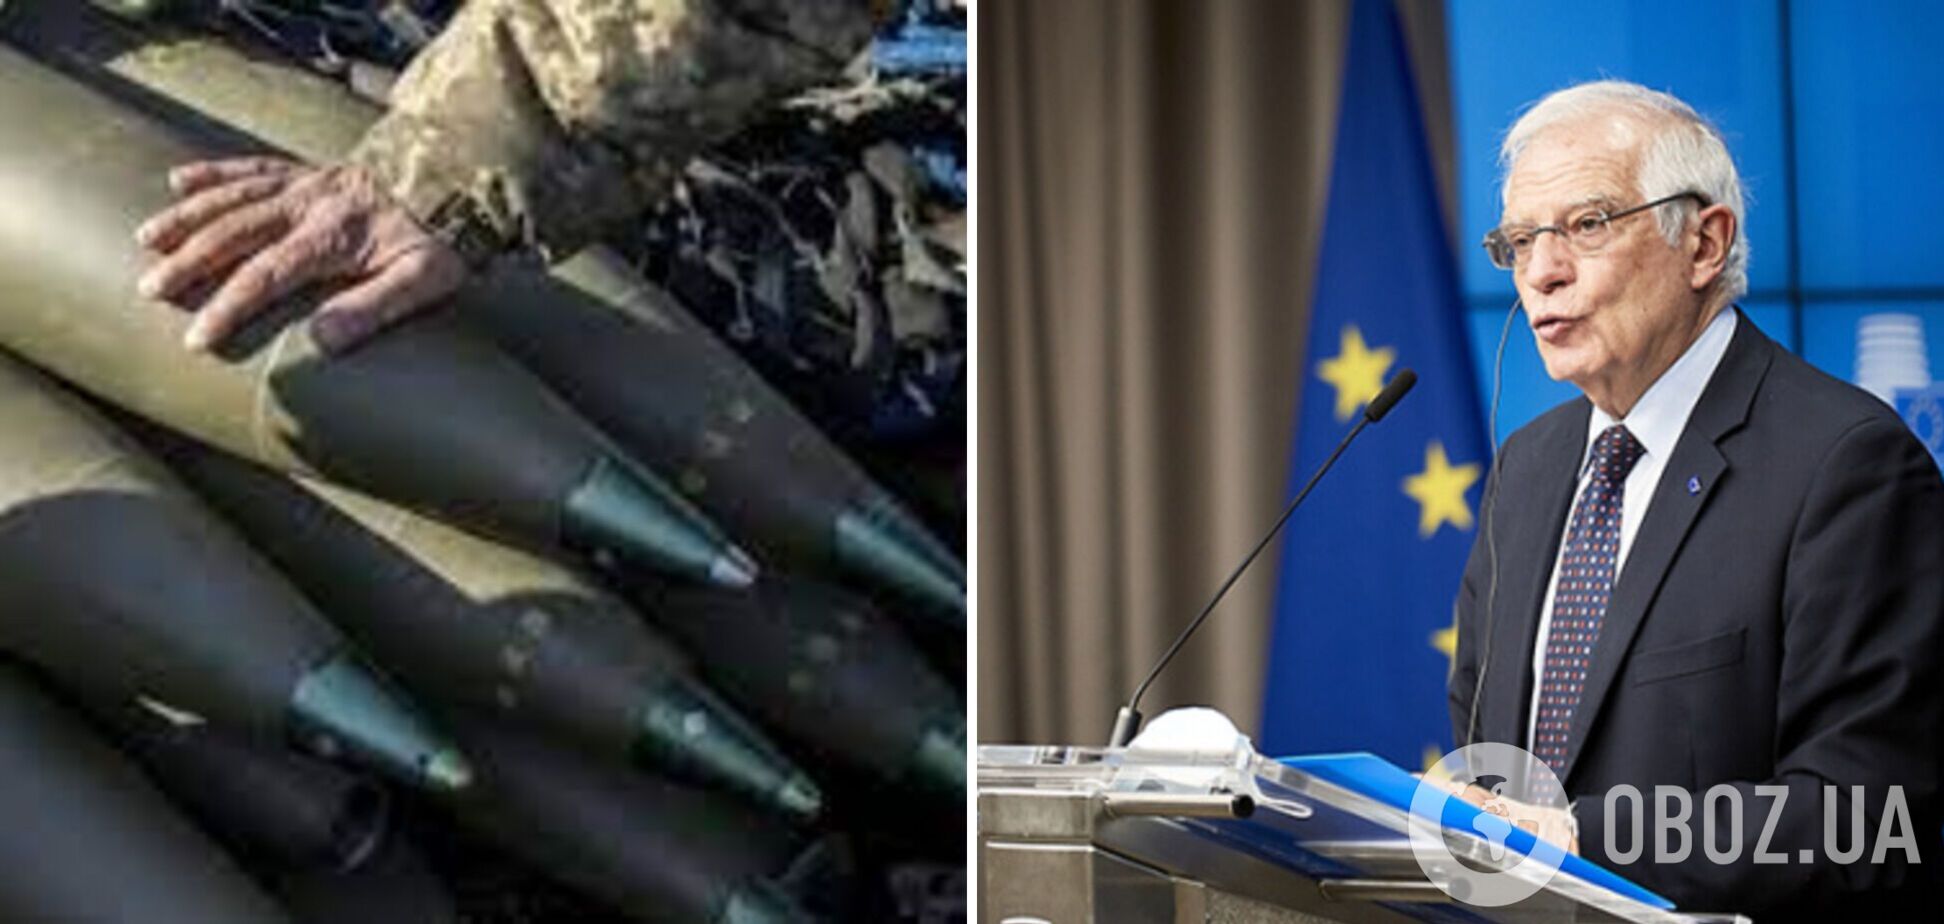 ЕС должен перенаправить экспорт и поставить Украине миллион снарядов вовремя, – Боррель